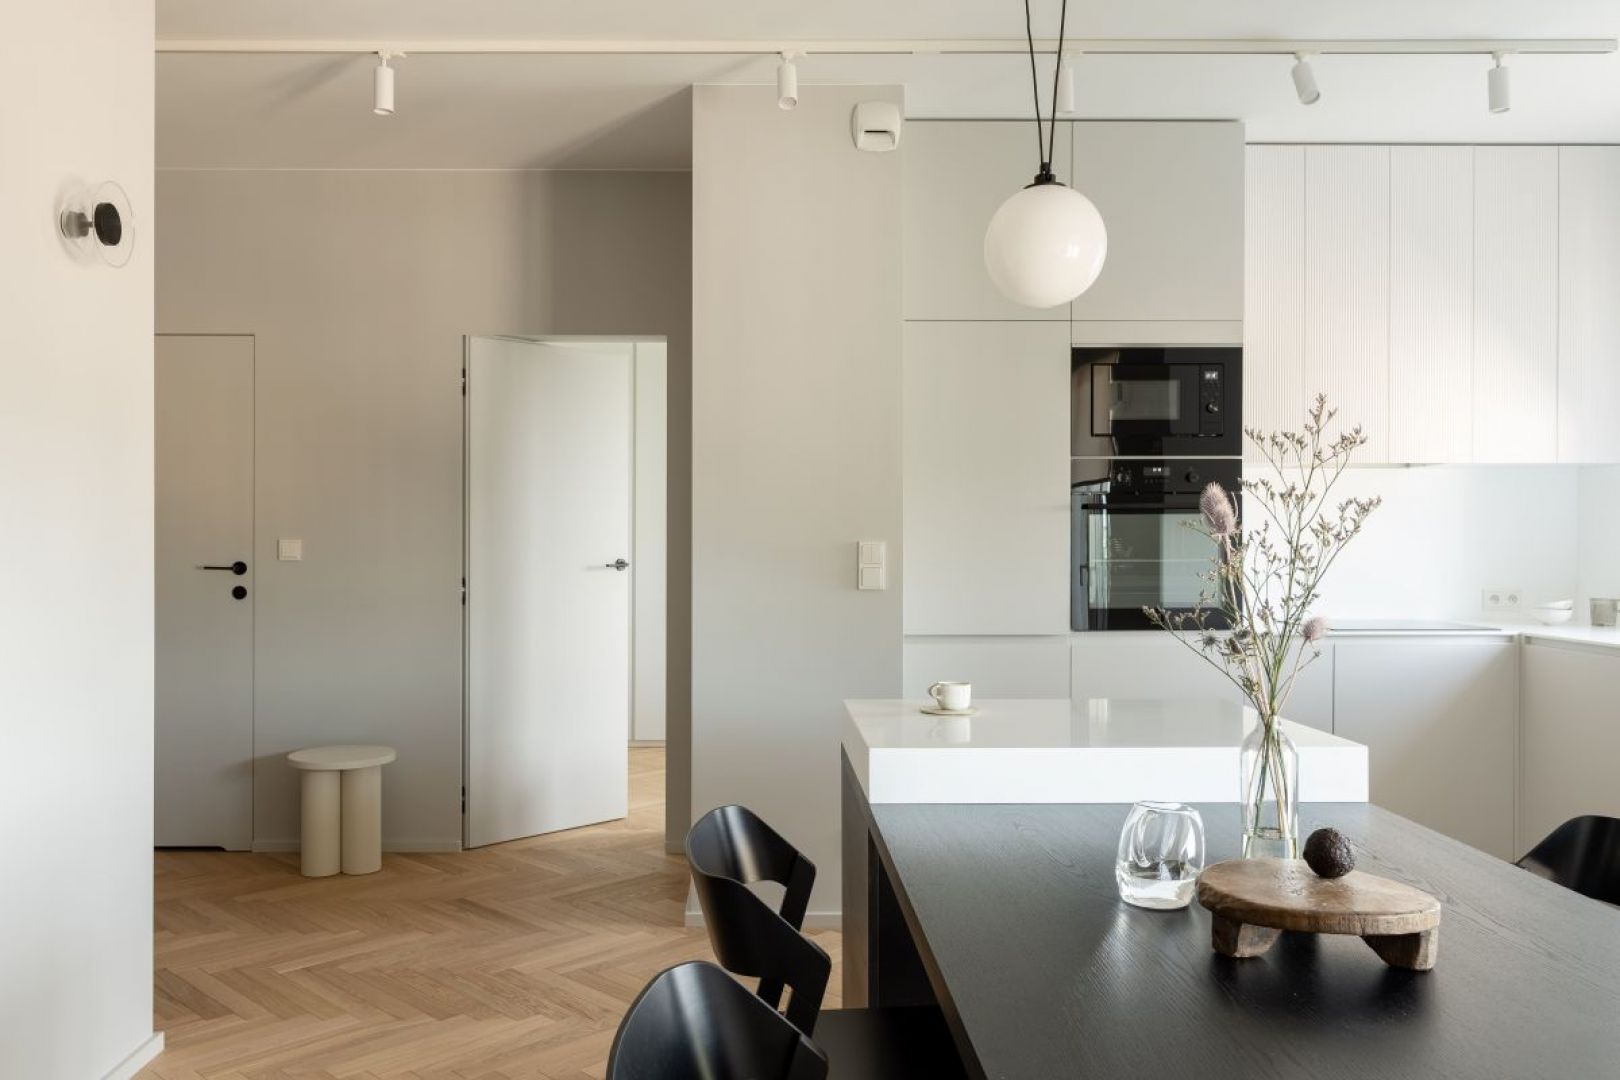 Kuchnia utrzymana jest w bielach i szarościach. Projekt wnętrza: 3XEL Architekci. Fot. PORA studio